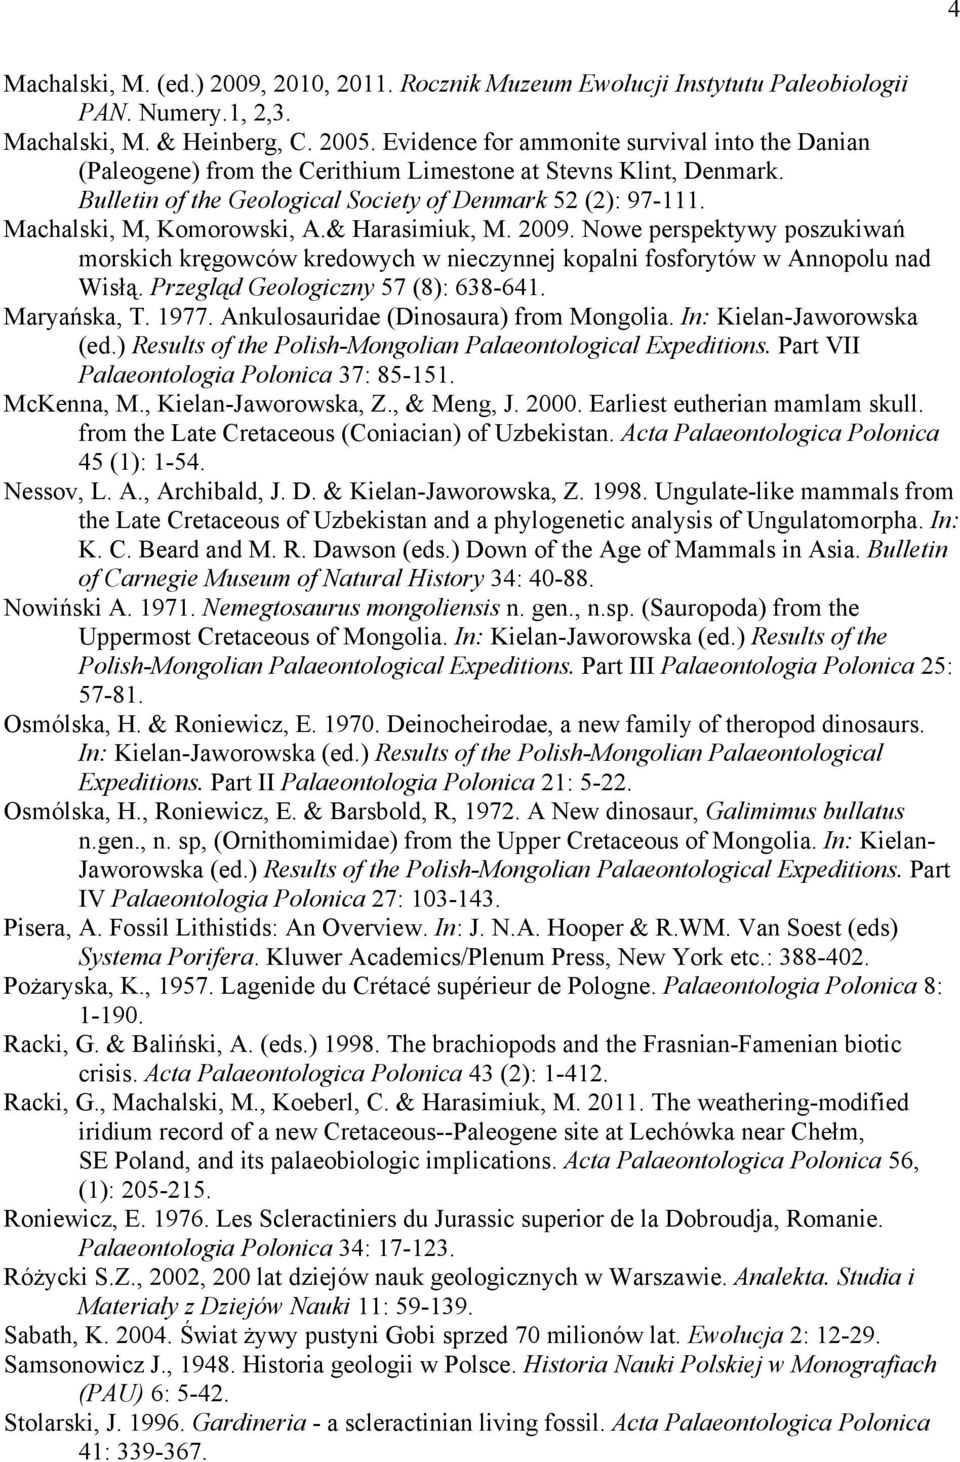 Machalski, M, Komorowski, A.& Harasimiuk, M. 2009. Nowe perspektywy poszukiwań morskich kręgowców kredowych w nieczynnej kopalni fosforytów w Annopolu nad Wisłą. Przegląd Geologiczny 57 (8): 638-641.